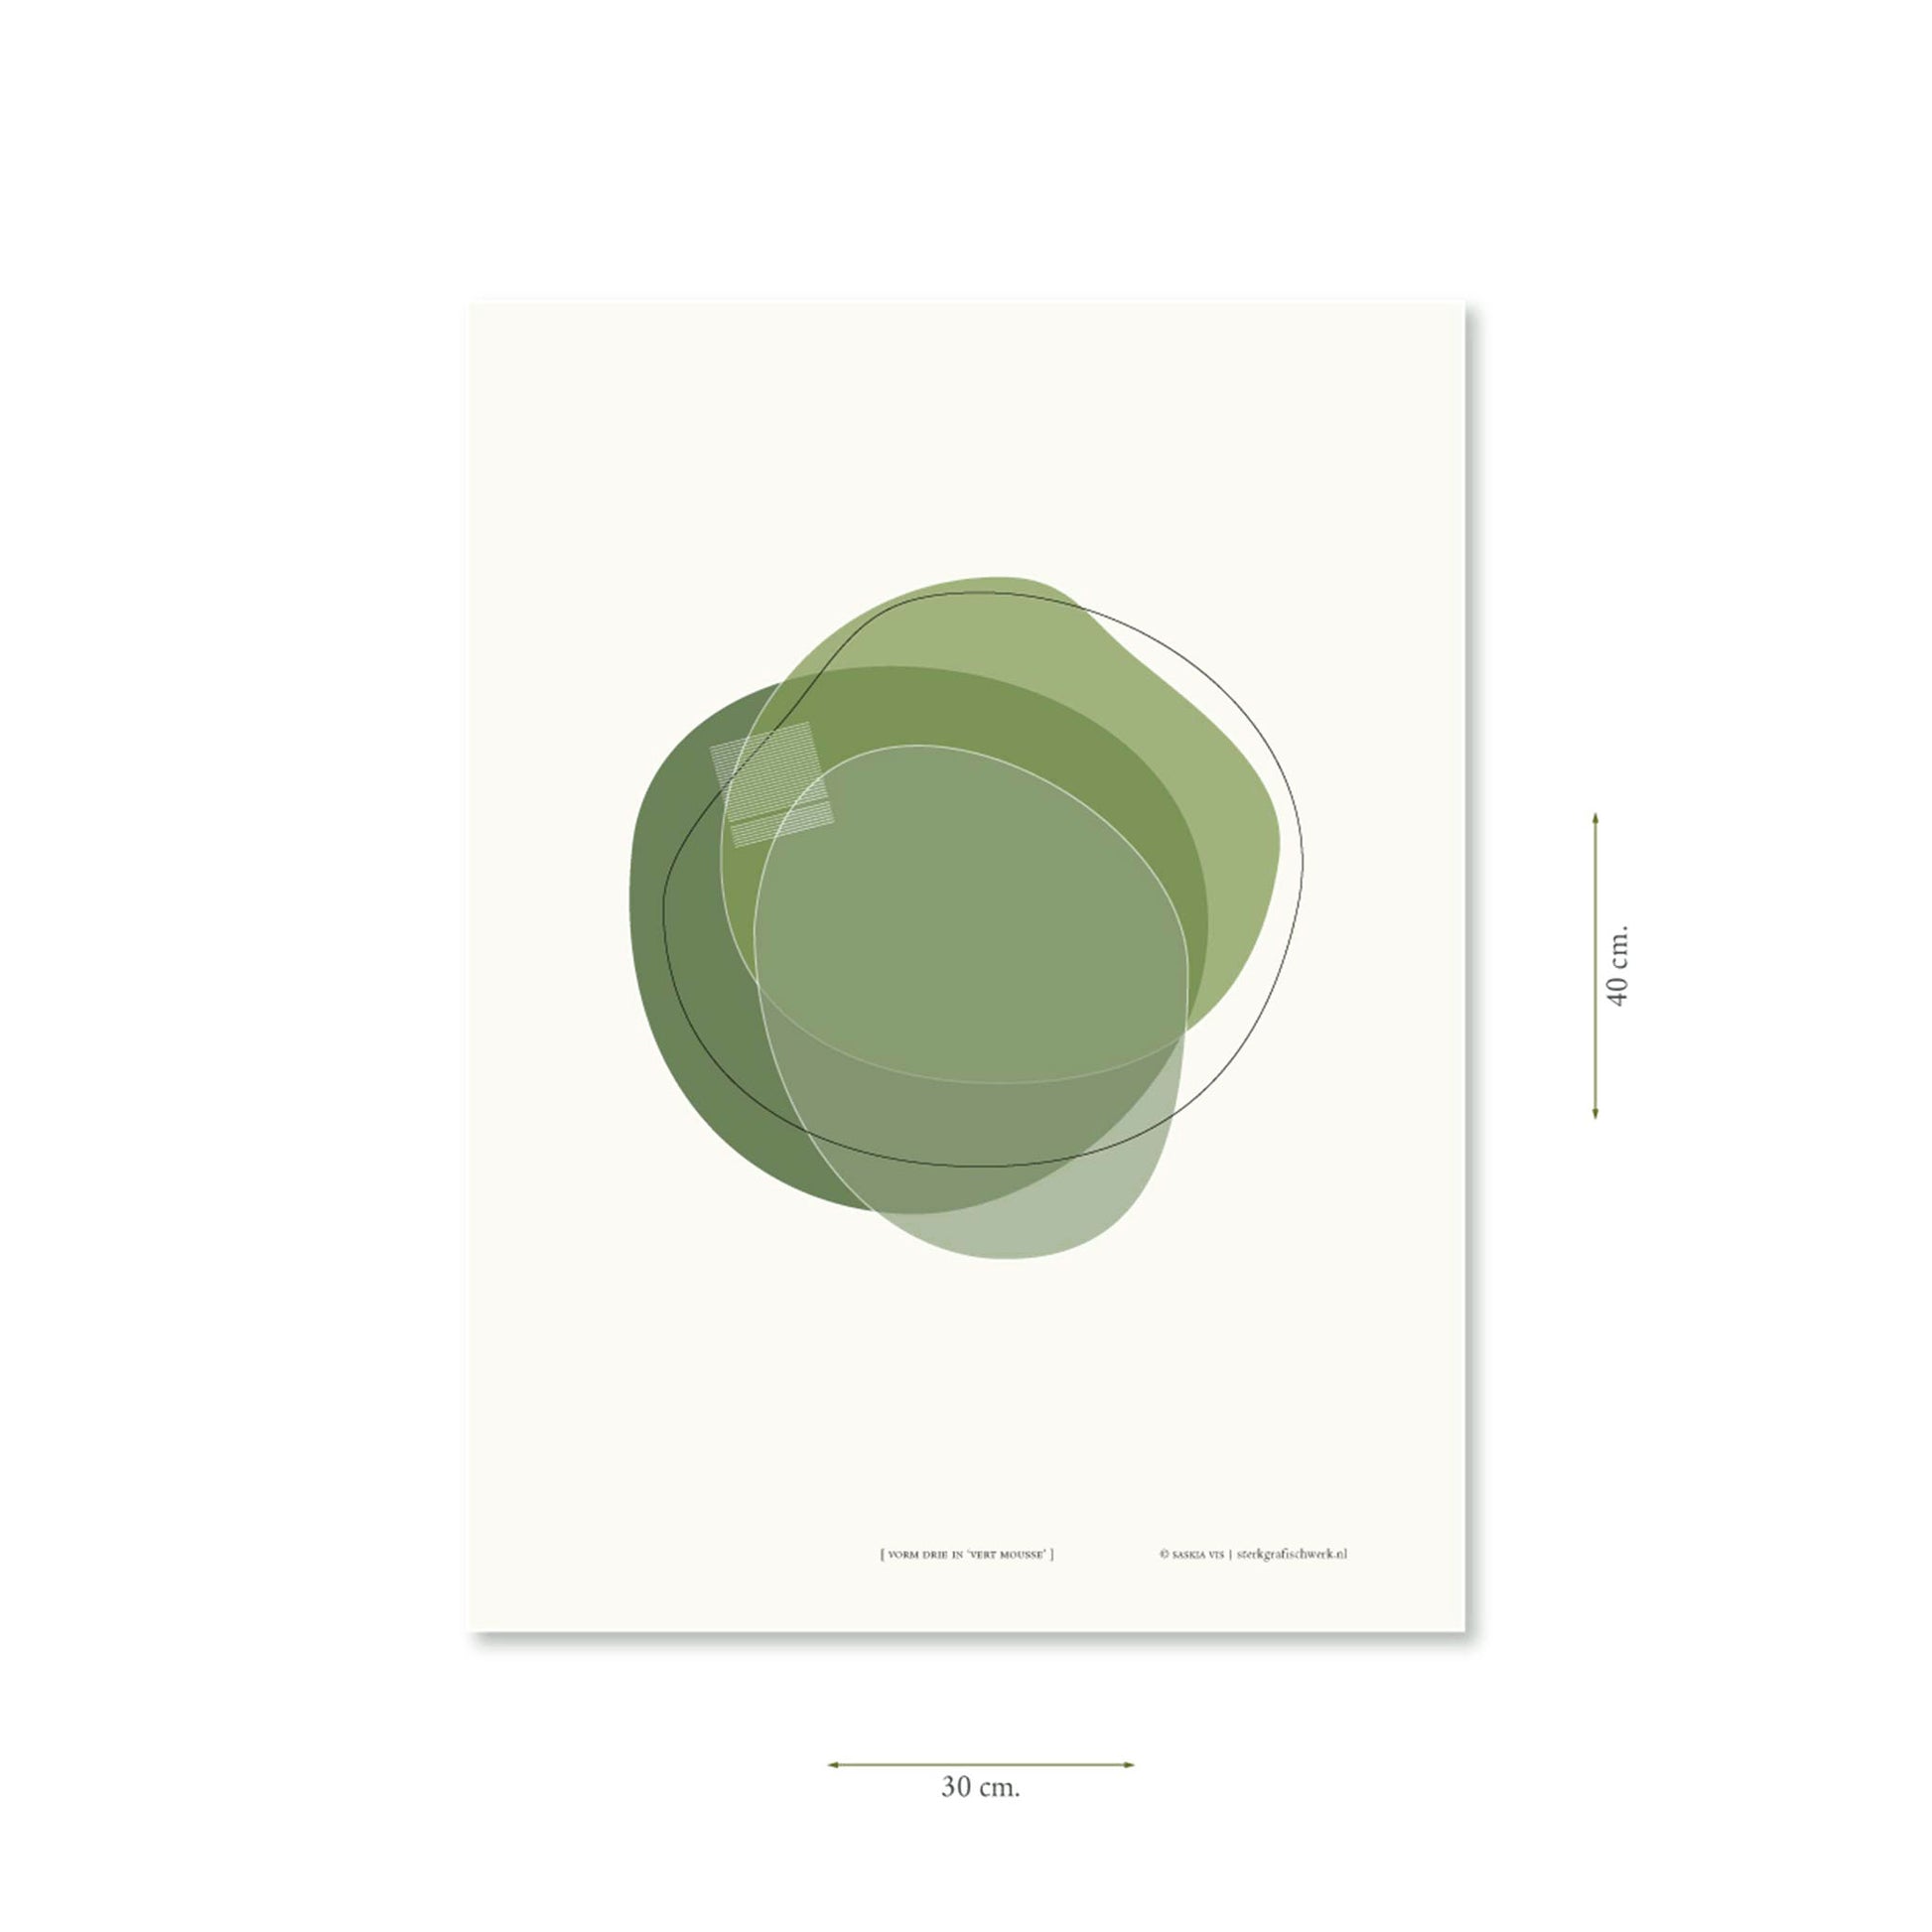 Productafbeelding poster "vorm drie in vert mousse" met aanduiding van het formaat erop weergegeven 30 x 40 cm